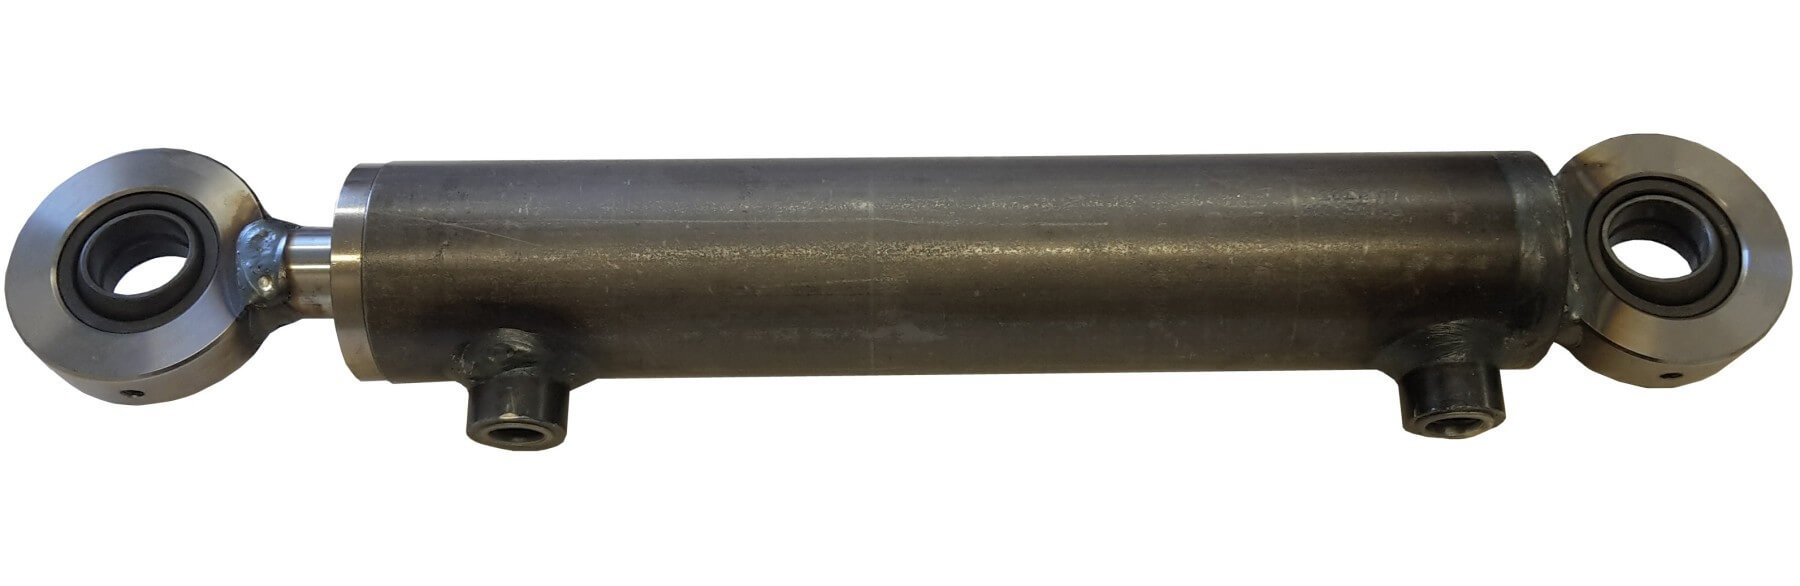 Hydraulisylinteri CL 40. 25. 300 GE - Kailatec Oy Verkkokauppa